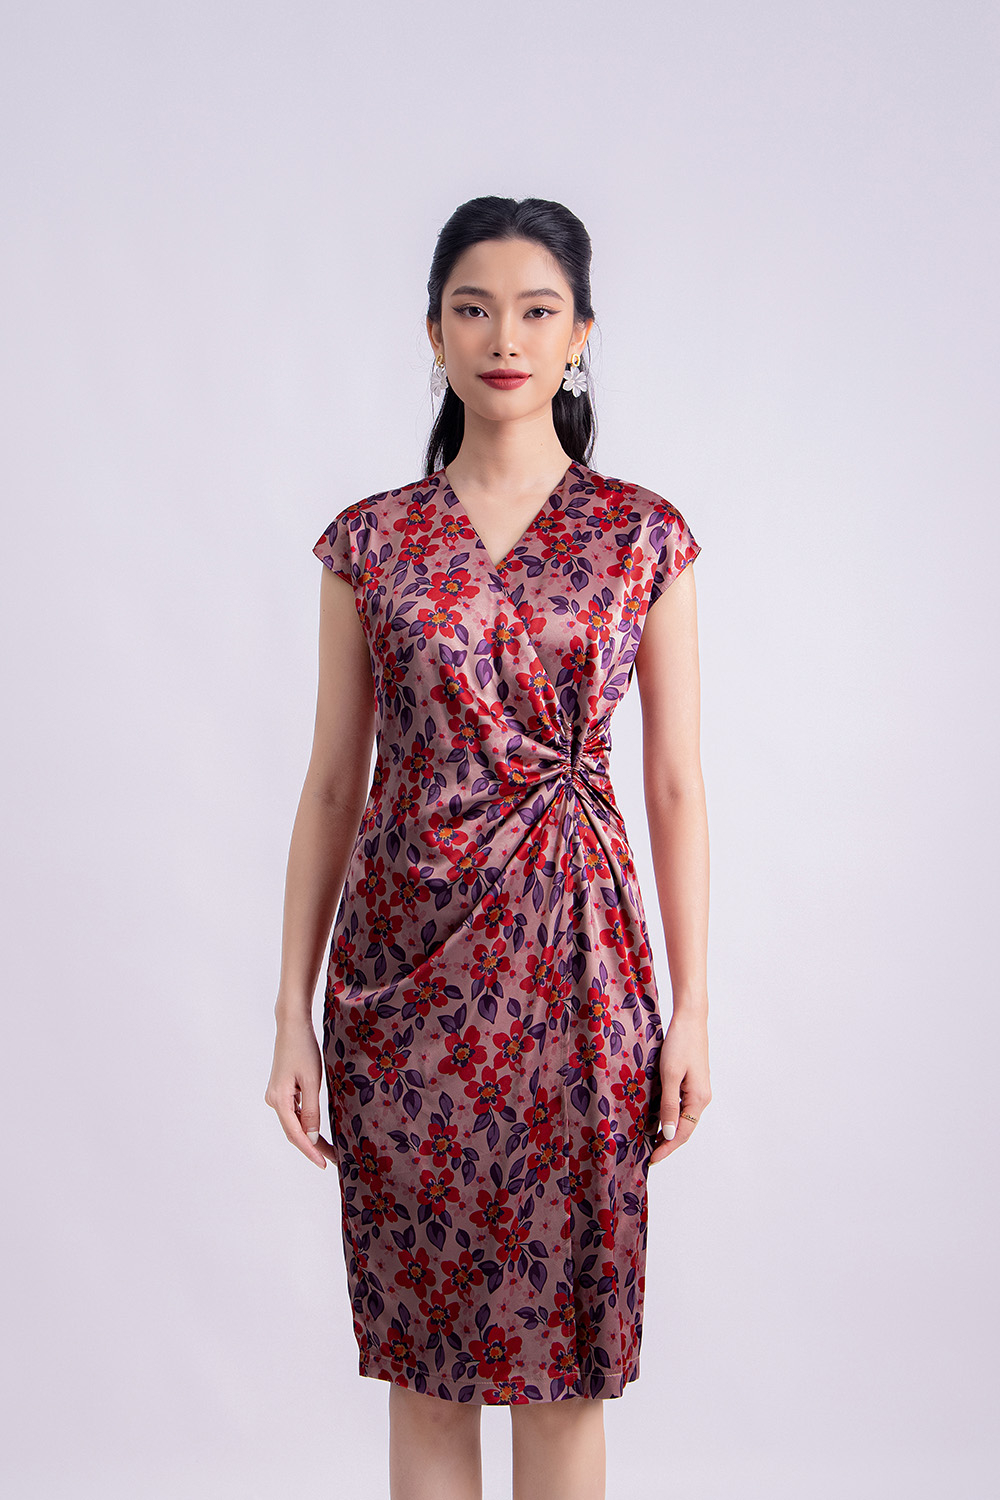 Đầm Yếm Xoắn Cổ Dễ Thương  Phong Cách Hàn Quốc Ngọt Ngào